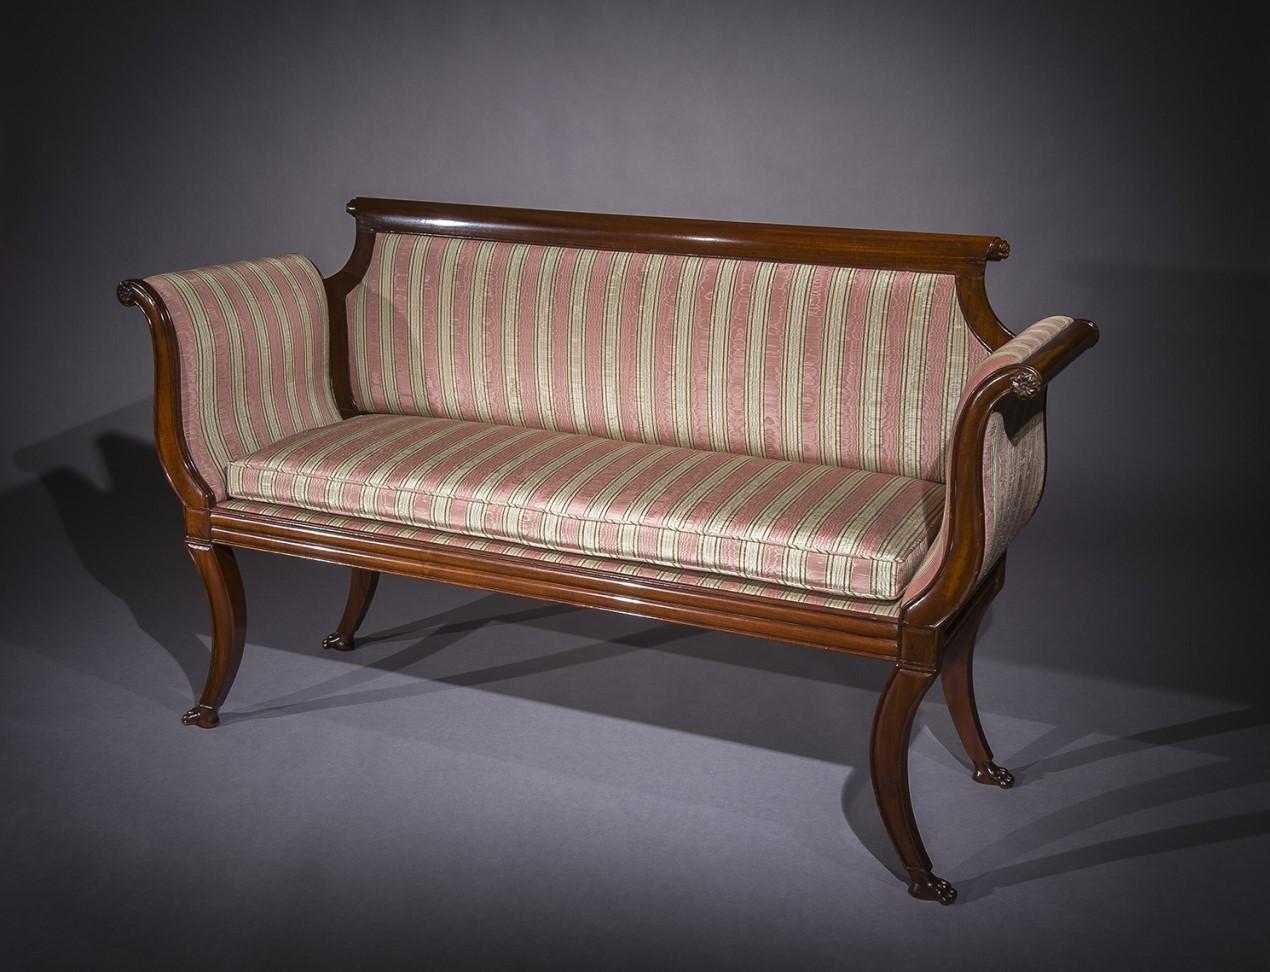 Kleine Couch im neoklassischen Stil
Boston, Massachusetts (tätig 1804-17), um 1810
Mahagoni (Sekundärholz: Esche)
Maße: 35 1/8 Zoll hoch, 59 3/4 Zoll lang, 19 1/8 Zoll tief.

Obwohl dieses Sofa aufgrund seiner geringen Größe in eine ganz eigene